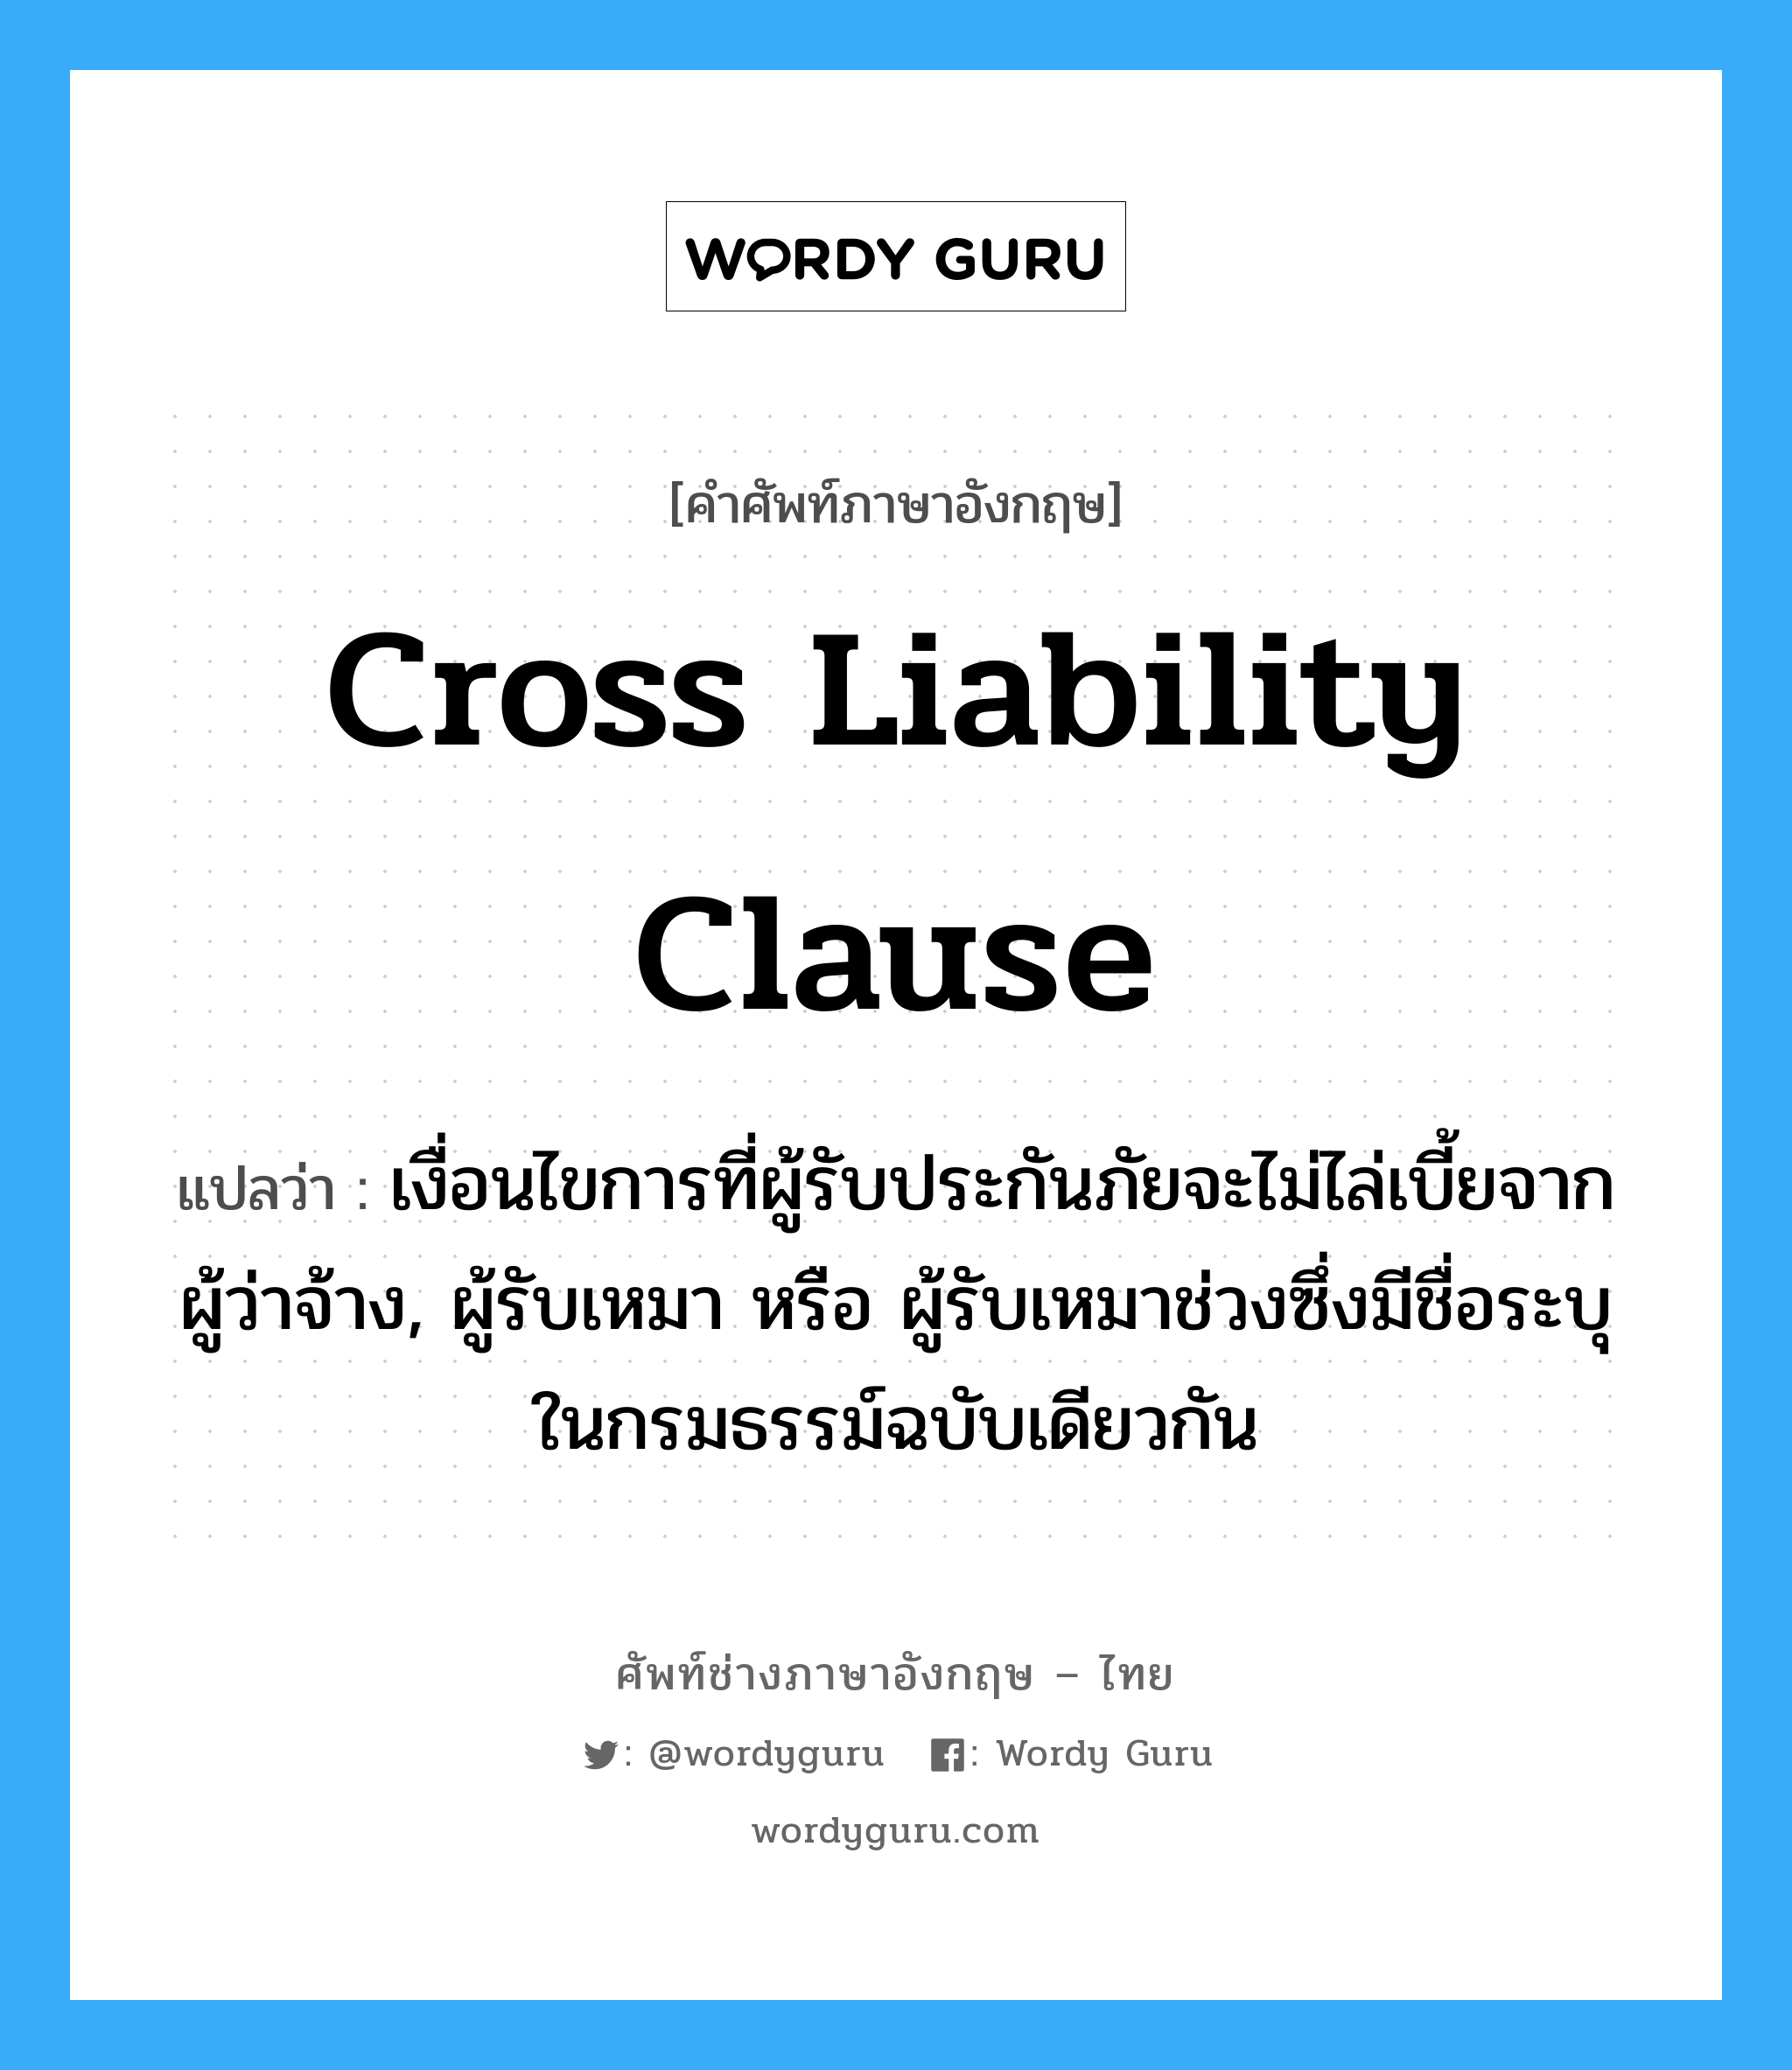 Cross Liability Clause แปลว่า?, คำศัพท์ช่างภาษาอังกฤษ - ไทย Cross Liability Clause คำศัพท์ภาษาอังกฤษ Cross Liability Clause แปลว่า เงื่อนไขการที่ผู้รับประกันภัยจะไม่ไล่เบี้ยจากผู้ว่าจ้าง, ผู้รับเหมา หรือ ผู้รับเหมาช่วงซึ่งมีชื่อระบุในกรมธรรม์ฉบับเดียวกัน